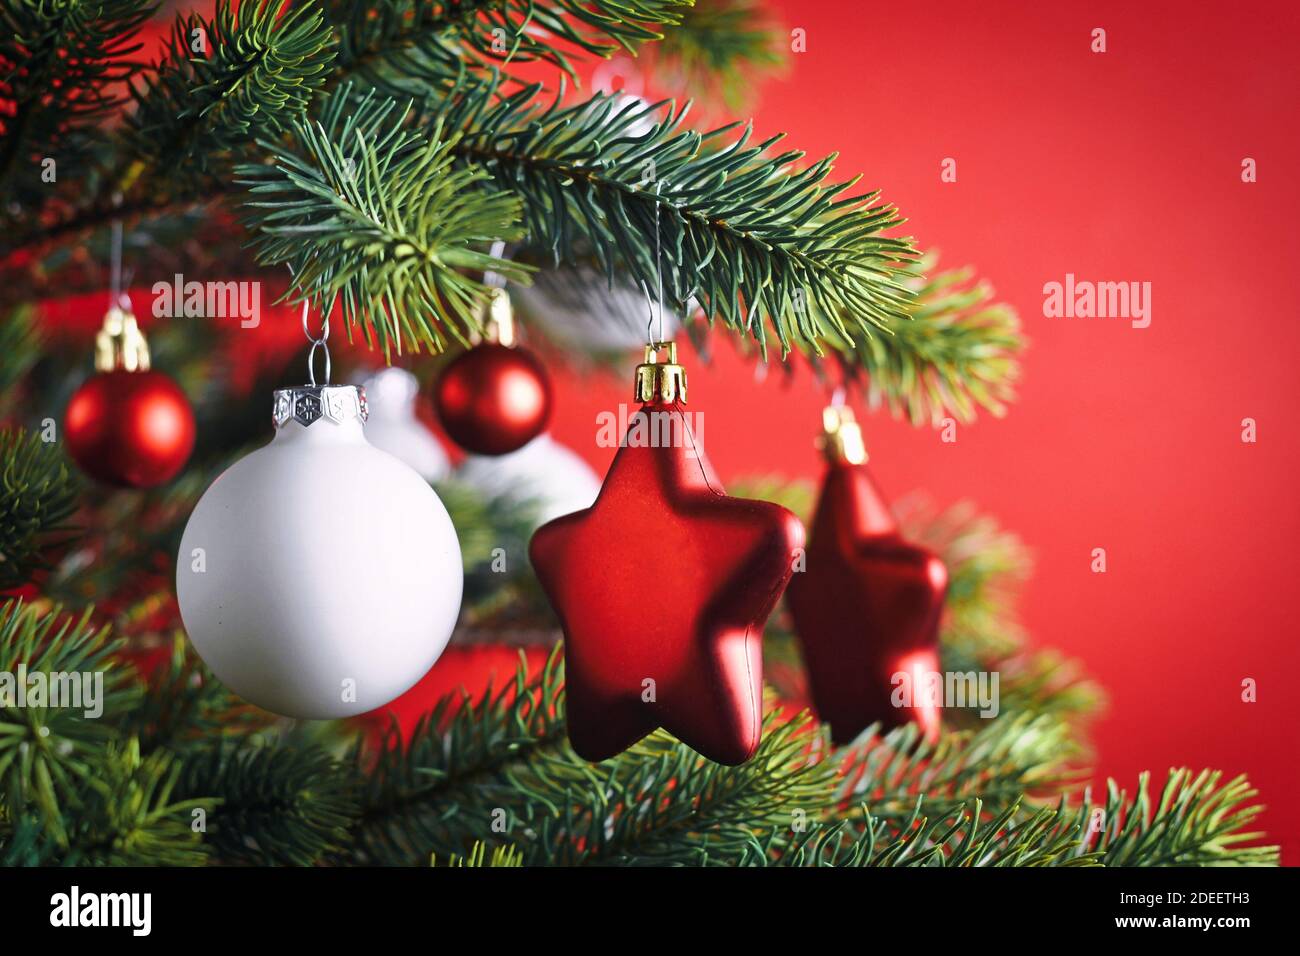 Nahaufnahme von dekorierten Weihnachtsbaum mit roten Stern geformt Und weiße Kugel formt Baum Ornament Kugeln auf rotem Hintergrund Stockfoto